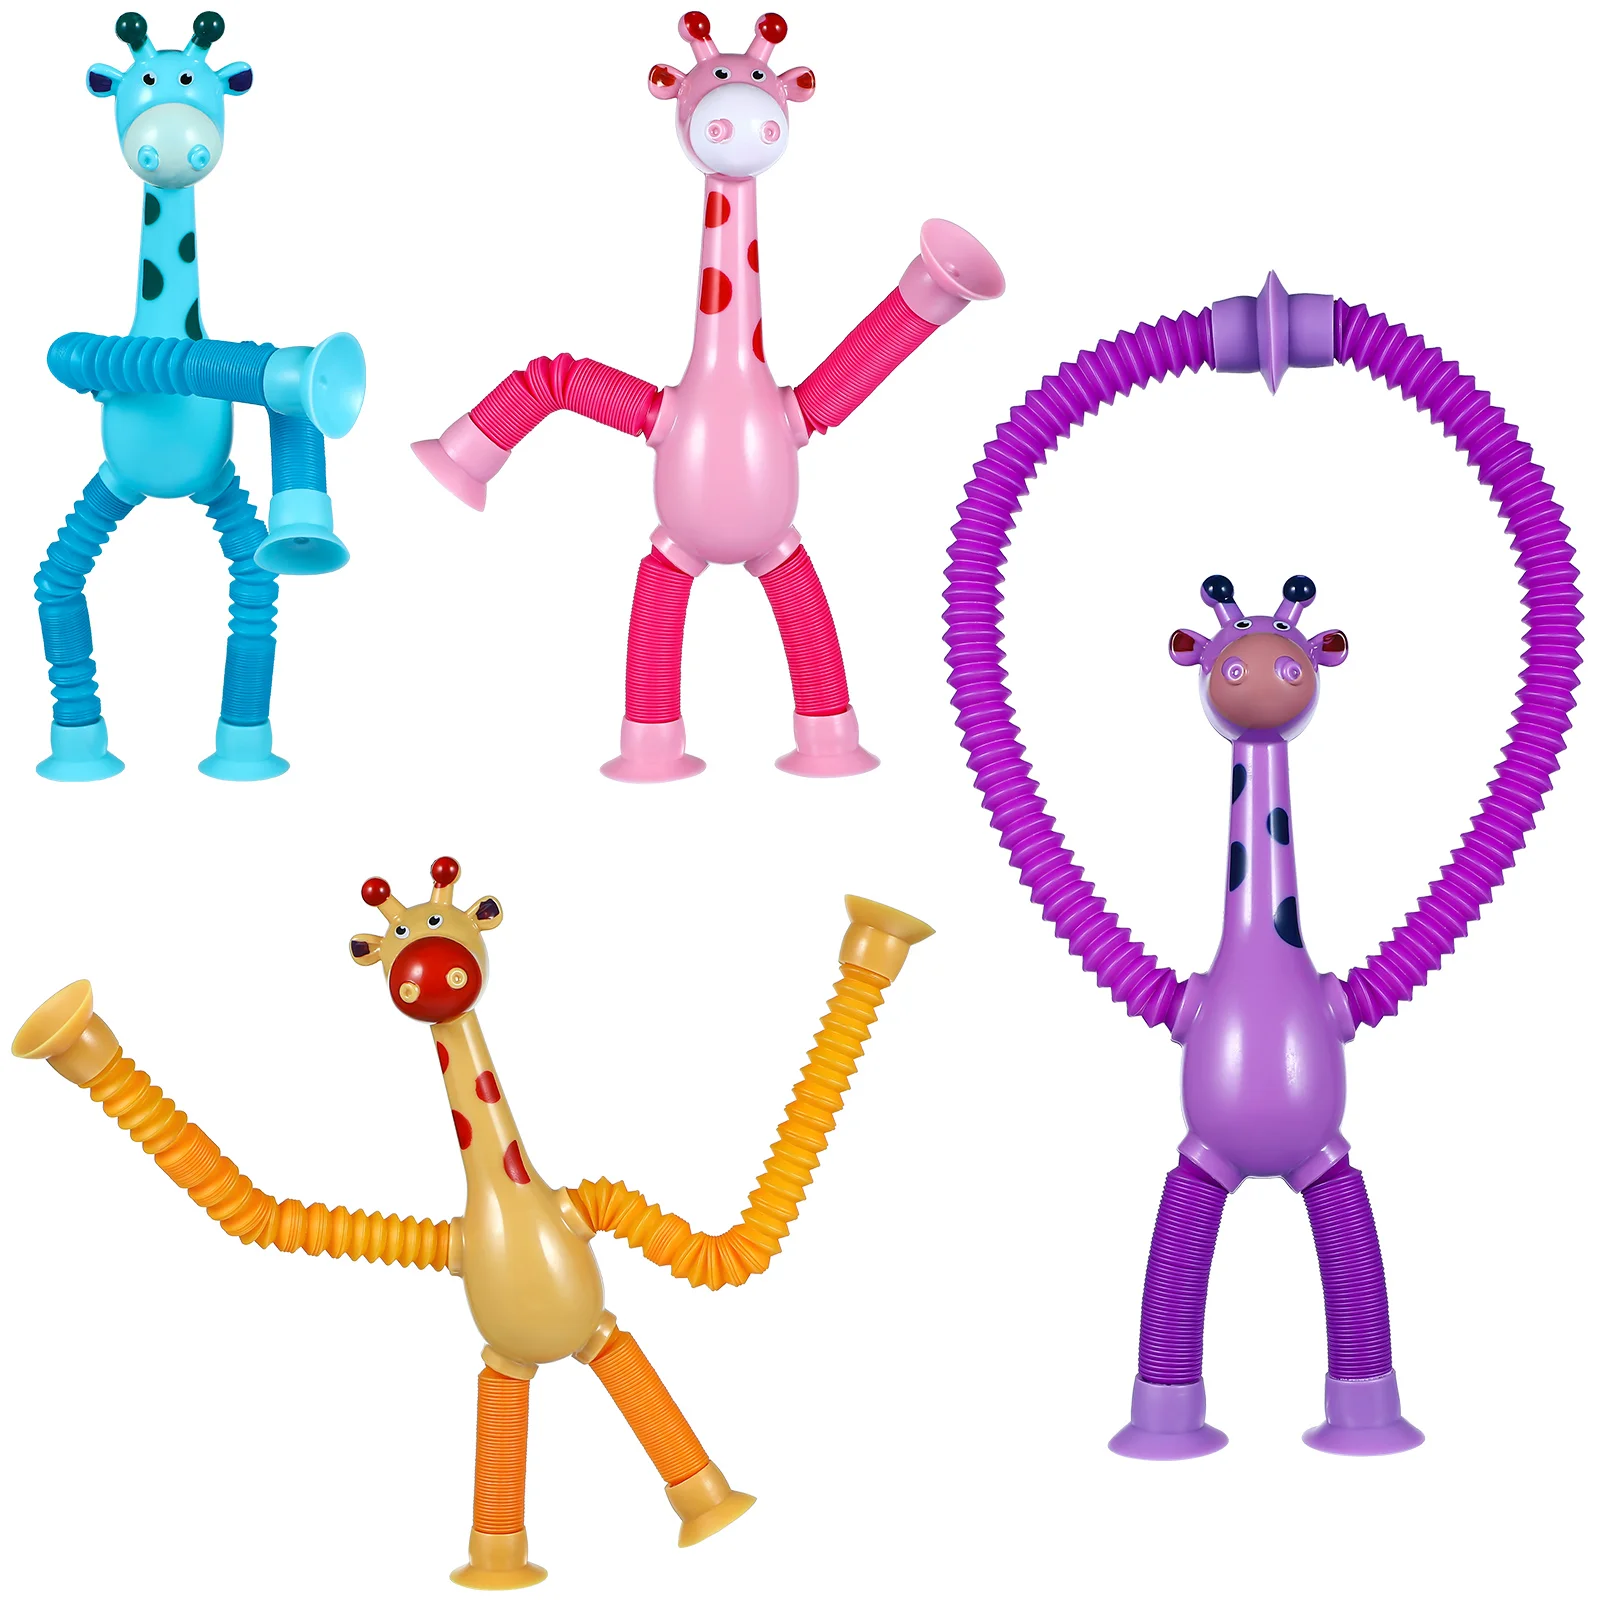 

Телескопическая присоска Жираф игрушки Светящиеся животные игрушки снятие стресса сенсорные сильфоны игрушки антистресс сжимаемая игрушка